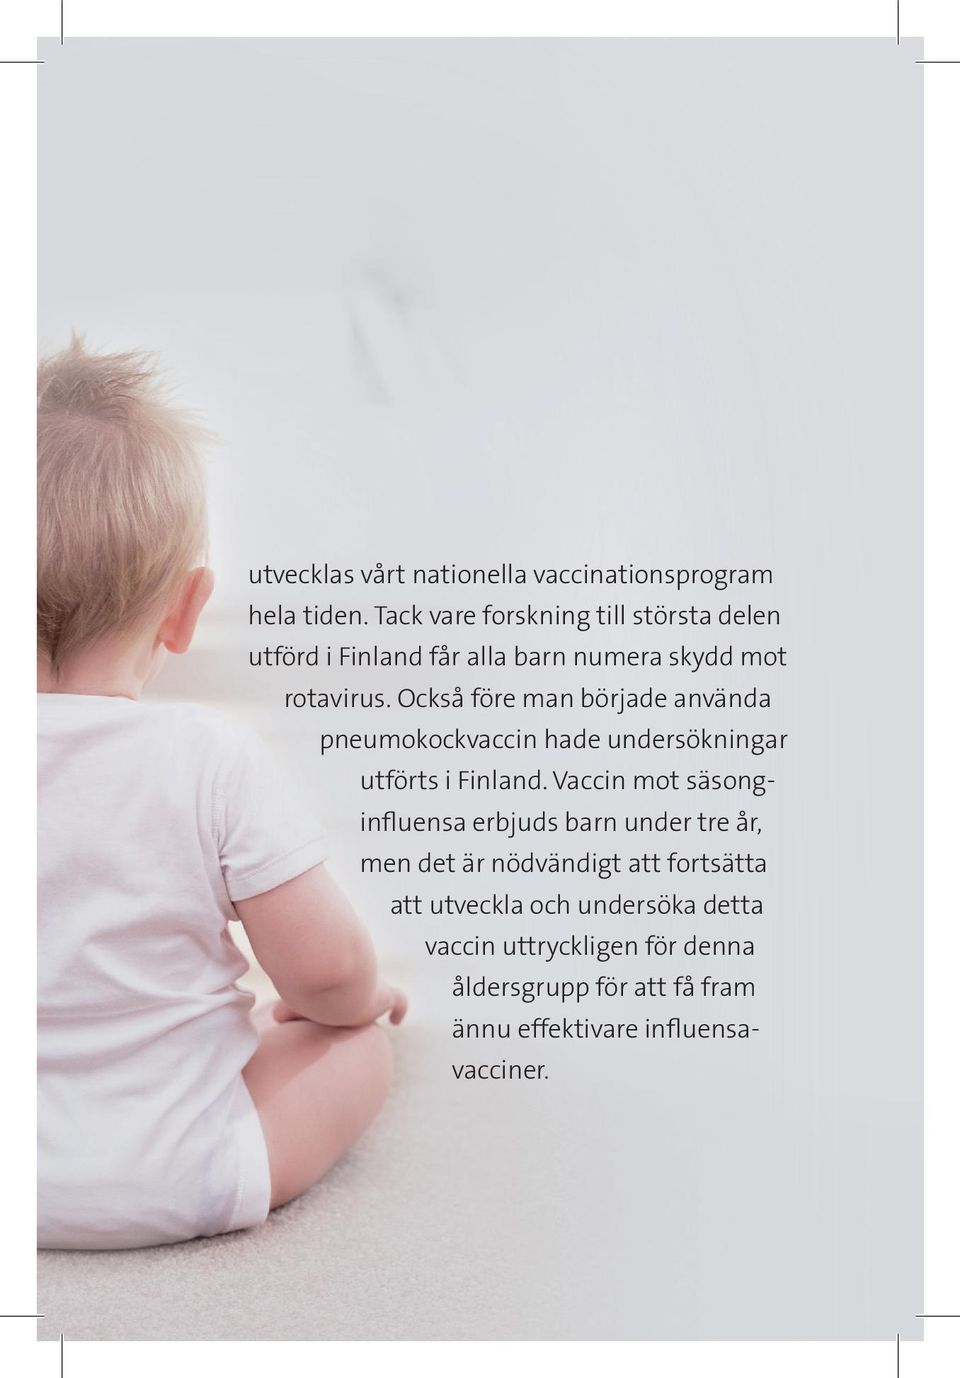 Också före man började använda pneumokockvaccin hade undersökningar utförts i Finland.